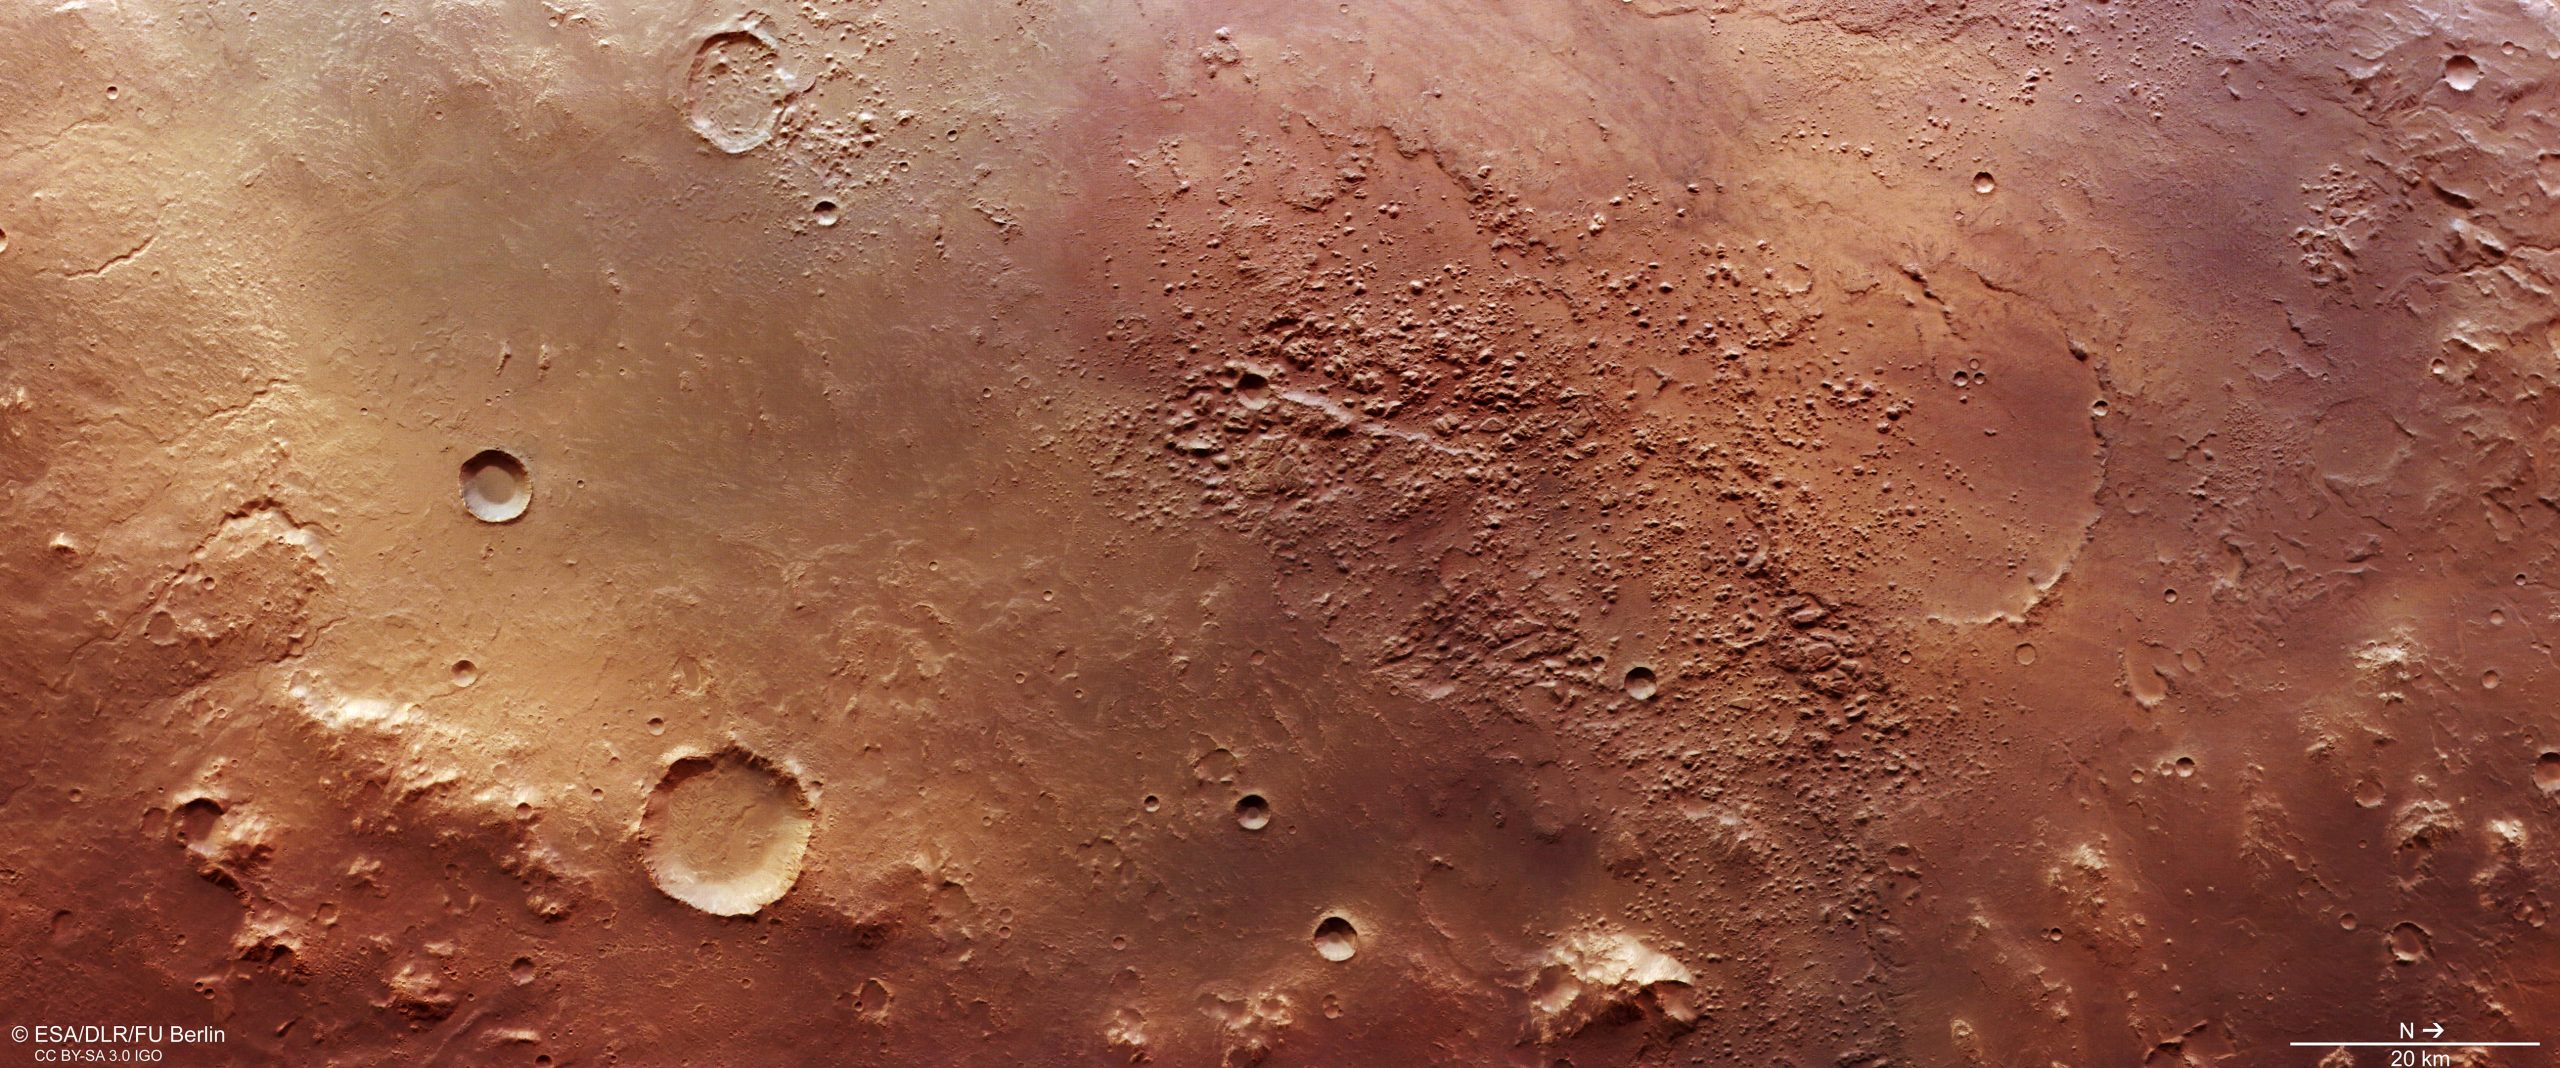 марс раст от солнца фото 73